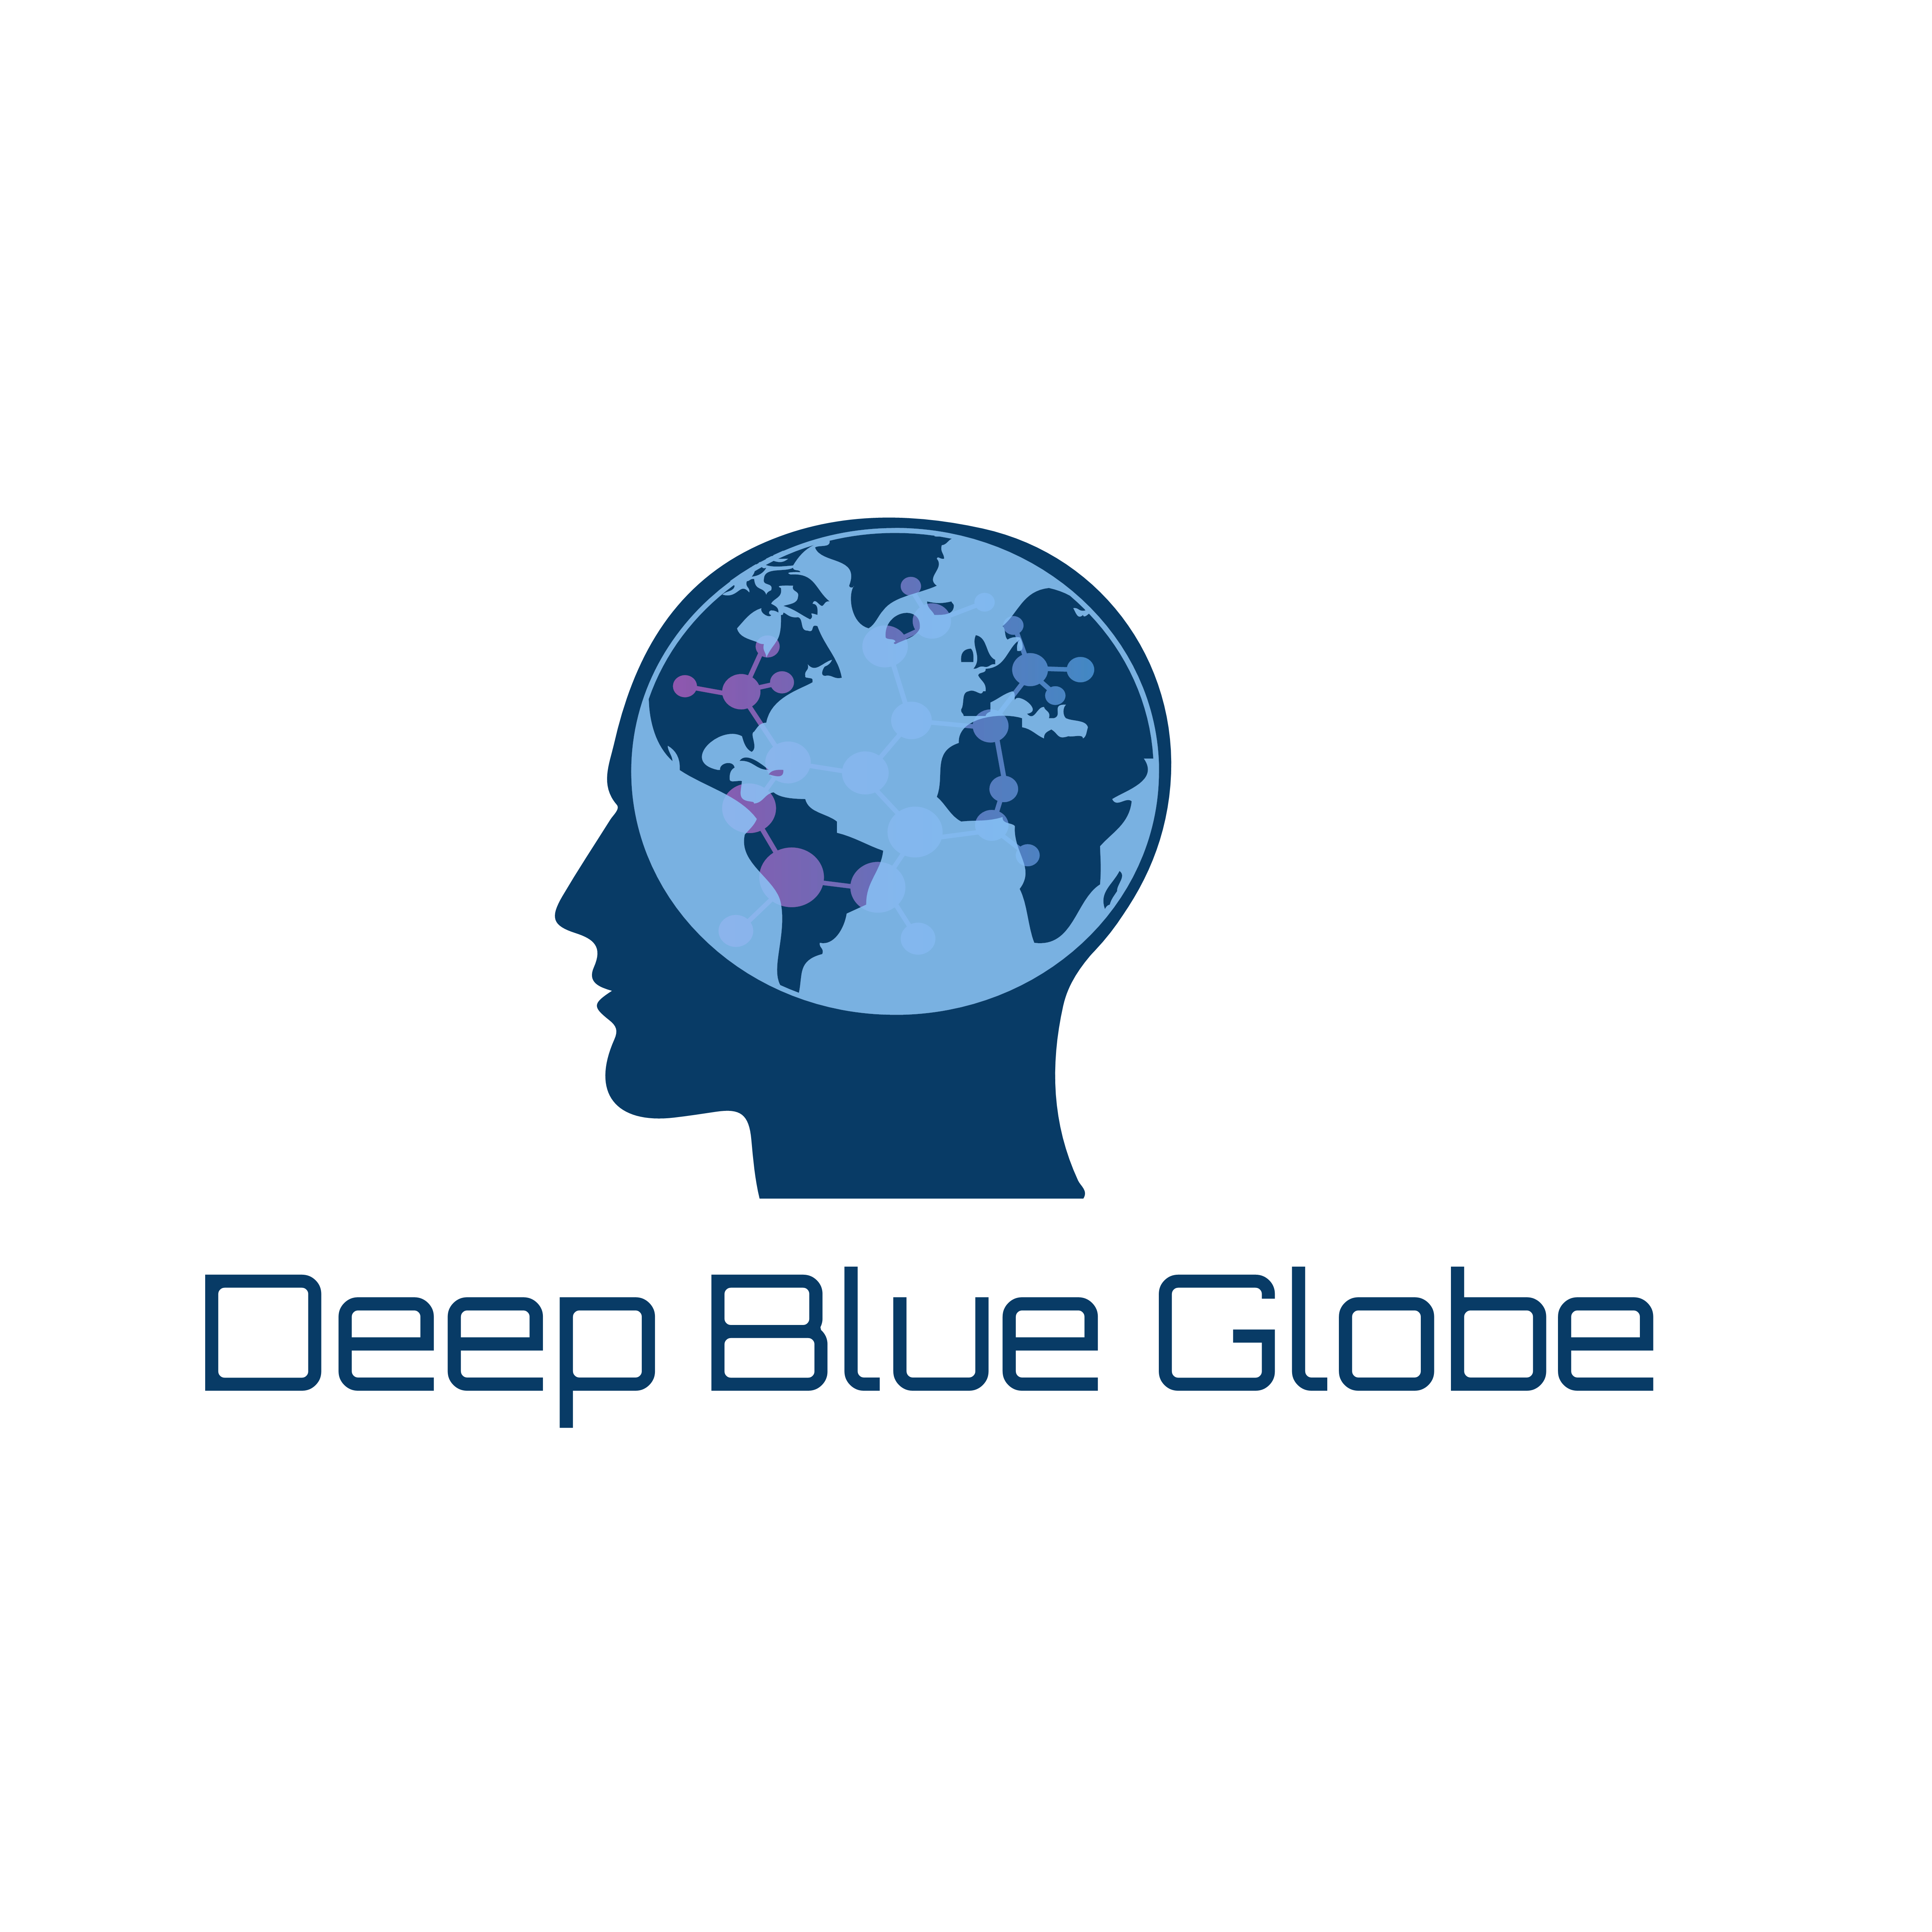 Deep Blue Globe logo